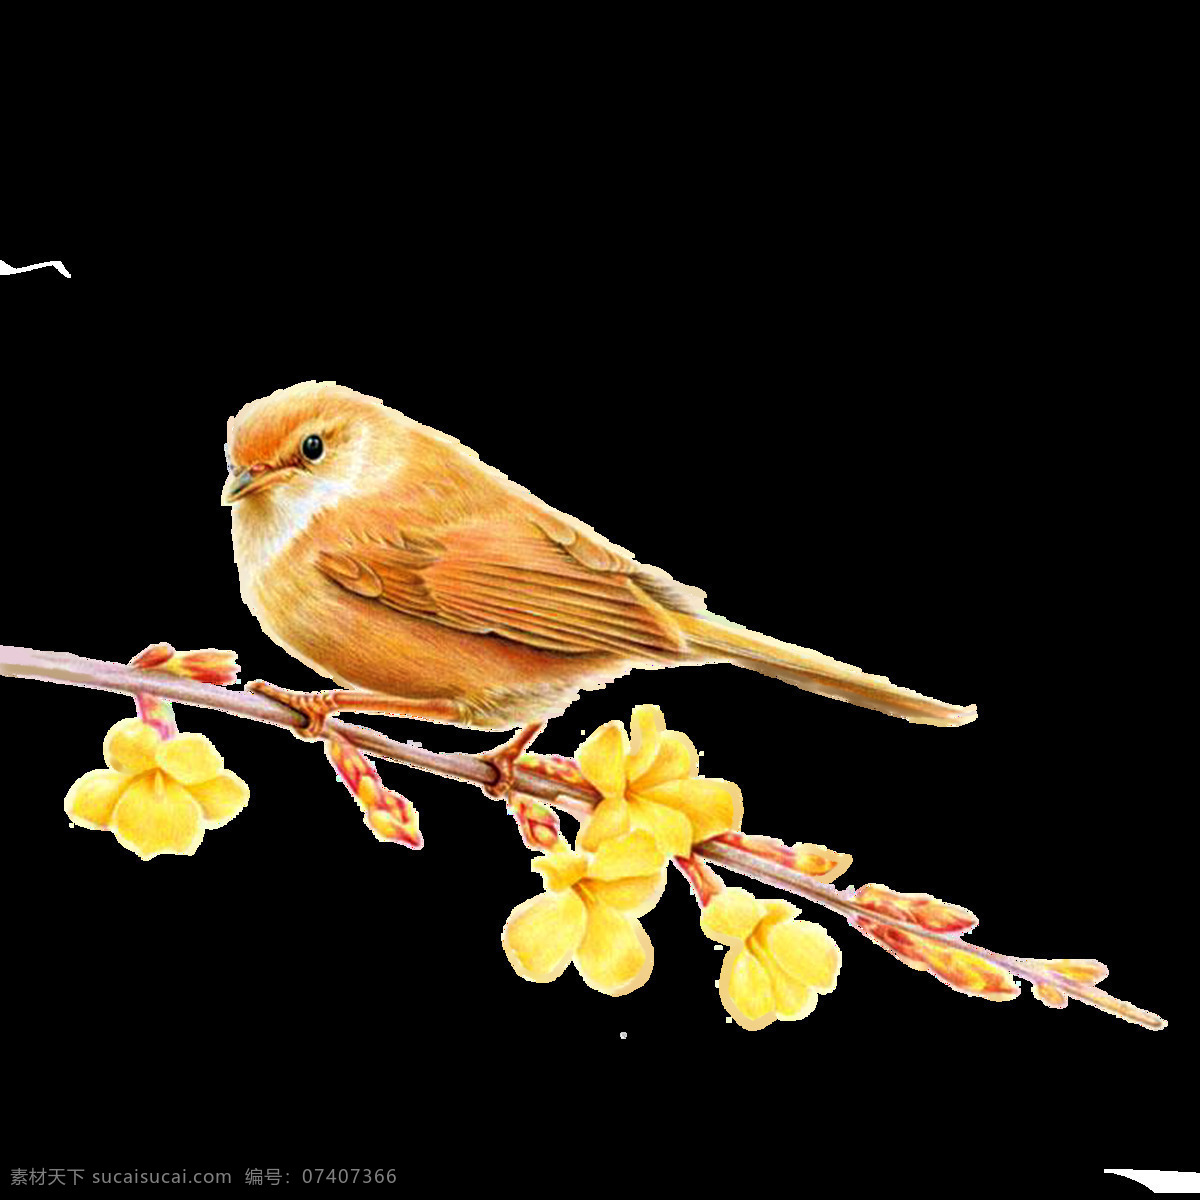 黄鹂 鸟 国风 插画 卡通 海报 黄鹂鸟 png格式